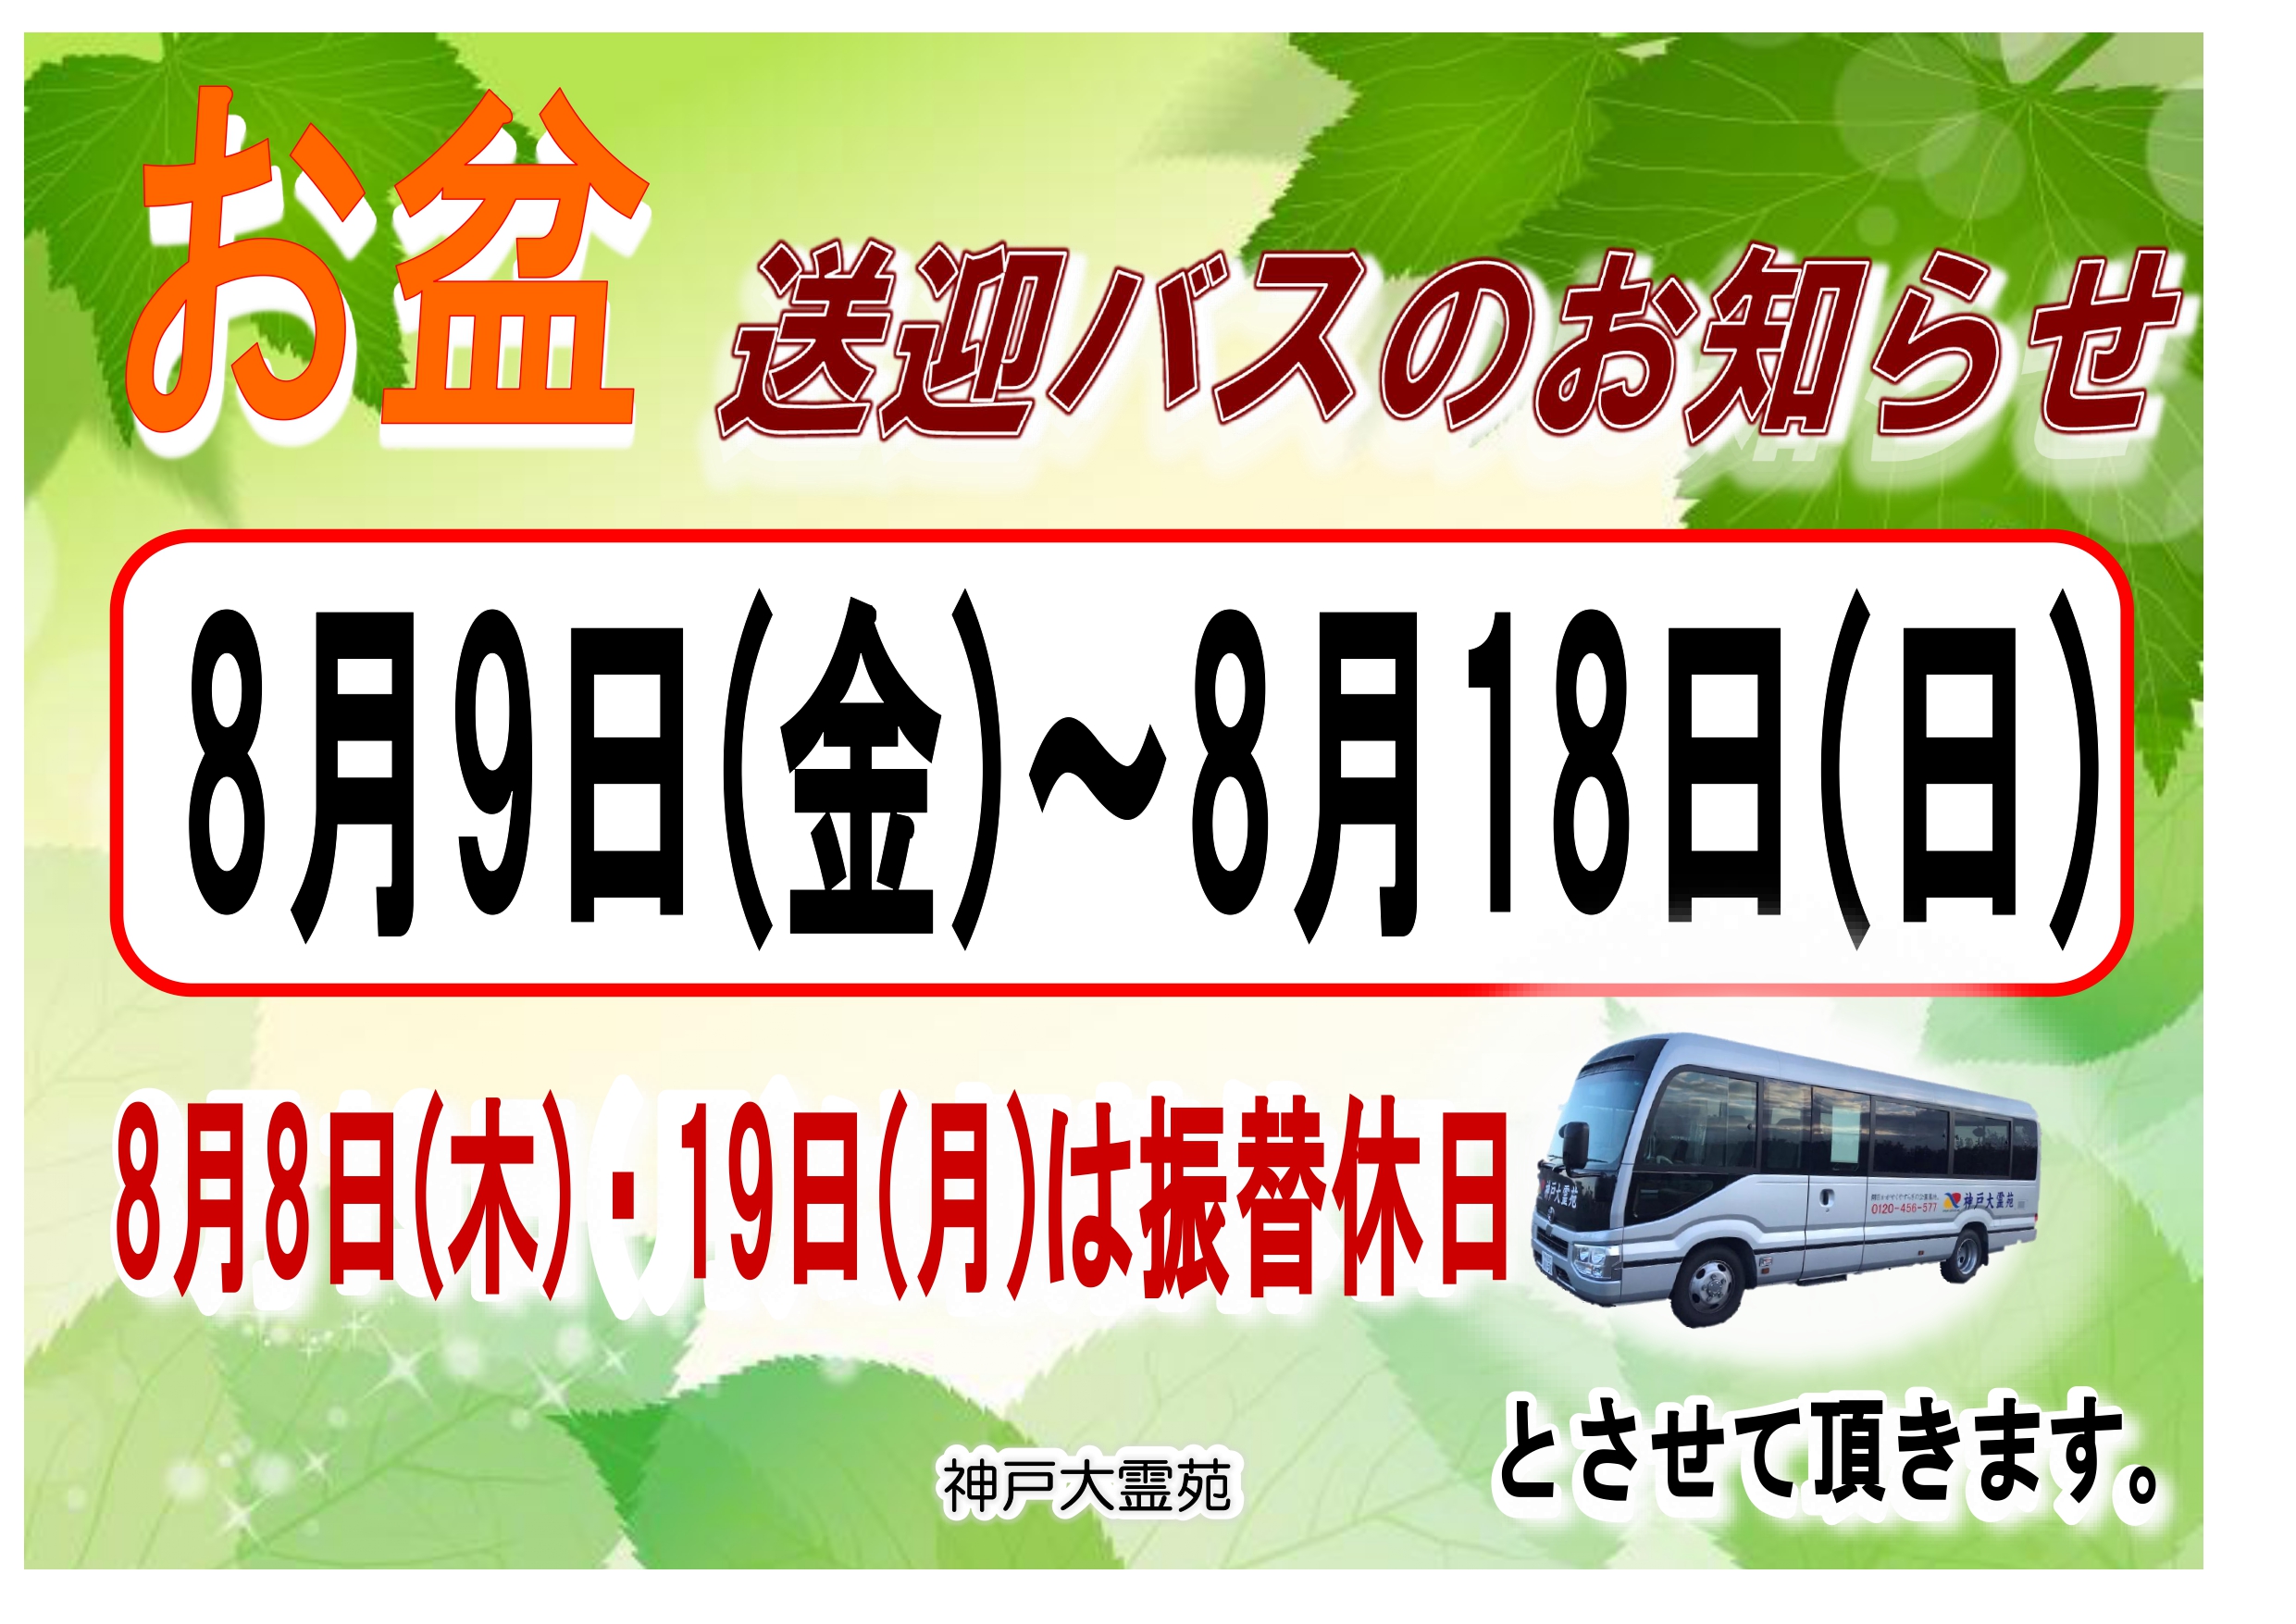 8月 お盆 送迎バス・振替定休日のお知らせ